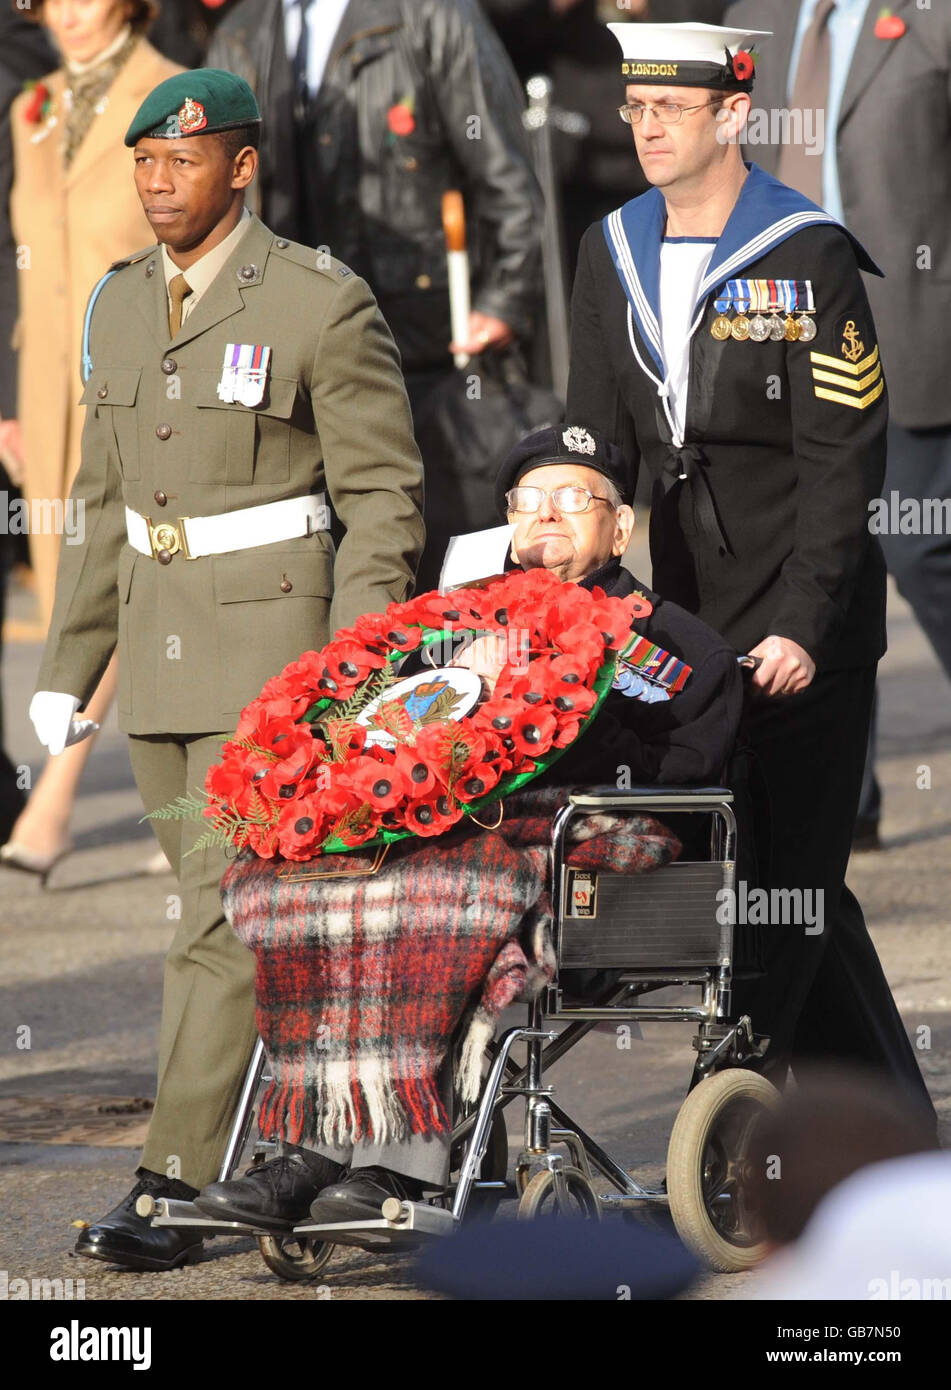 L'un des trois derniers anciens combattants survivants de la première Guerre mondiale, Bill Stone, 108 ans, lors de la cérémonie de commémoration du jour de l'armistice au Centotaph, à Whitehall, Londres. Banque D'Images